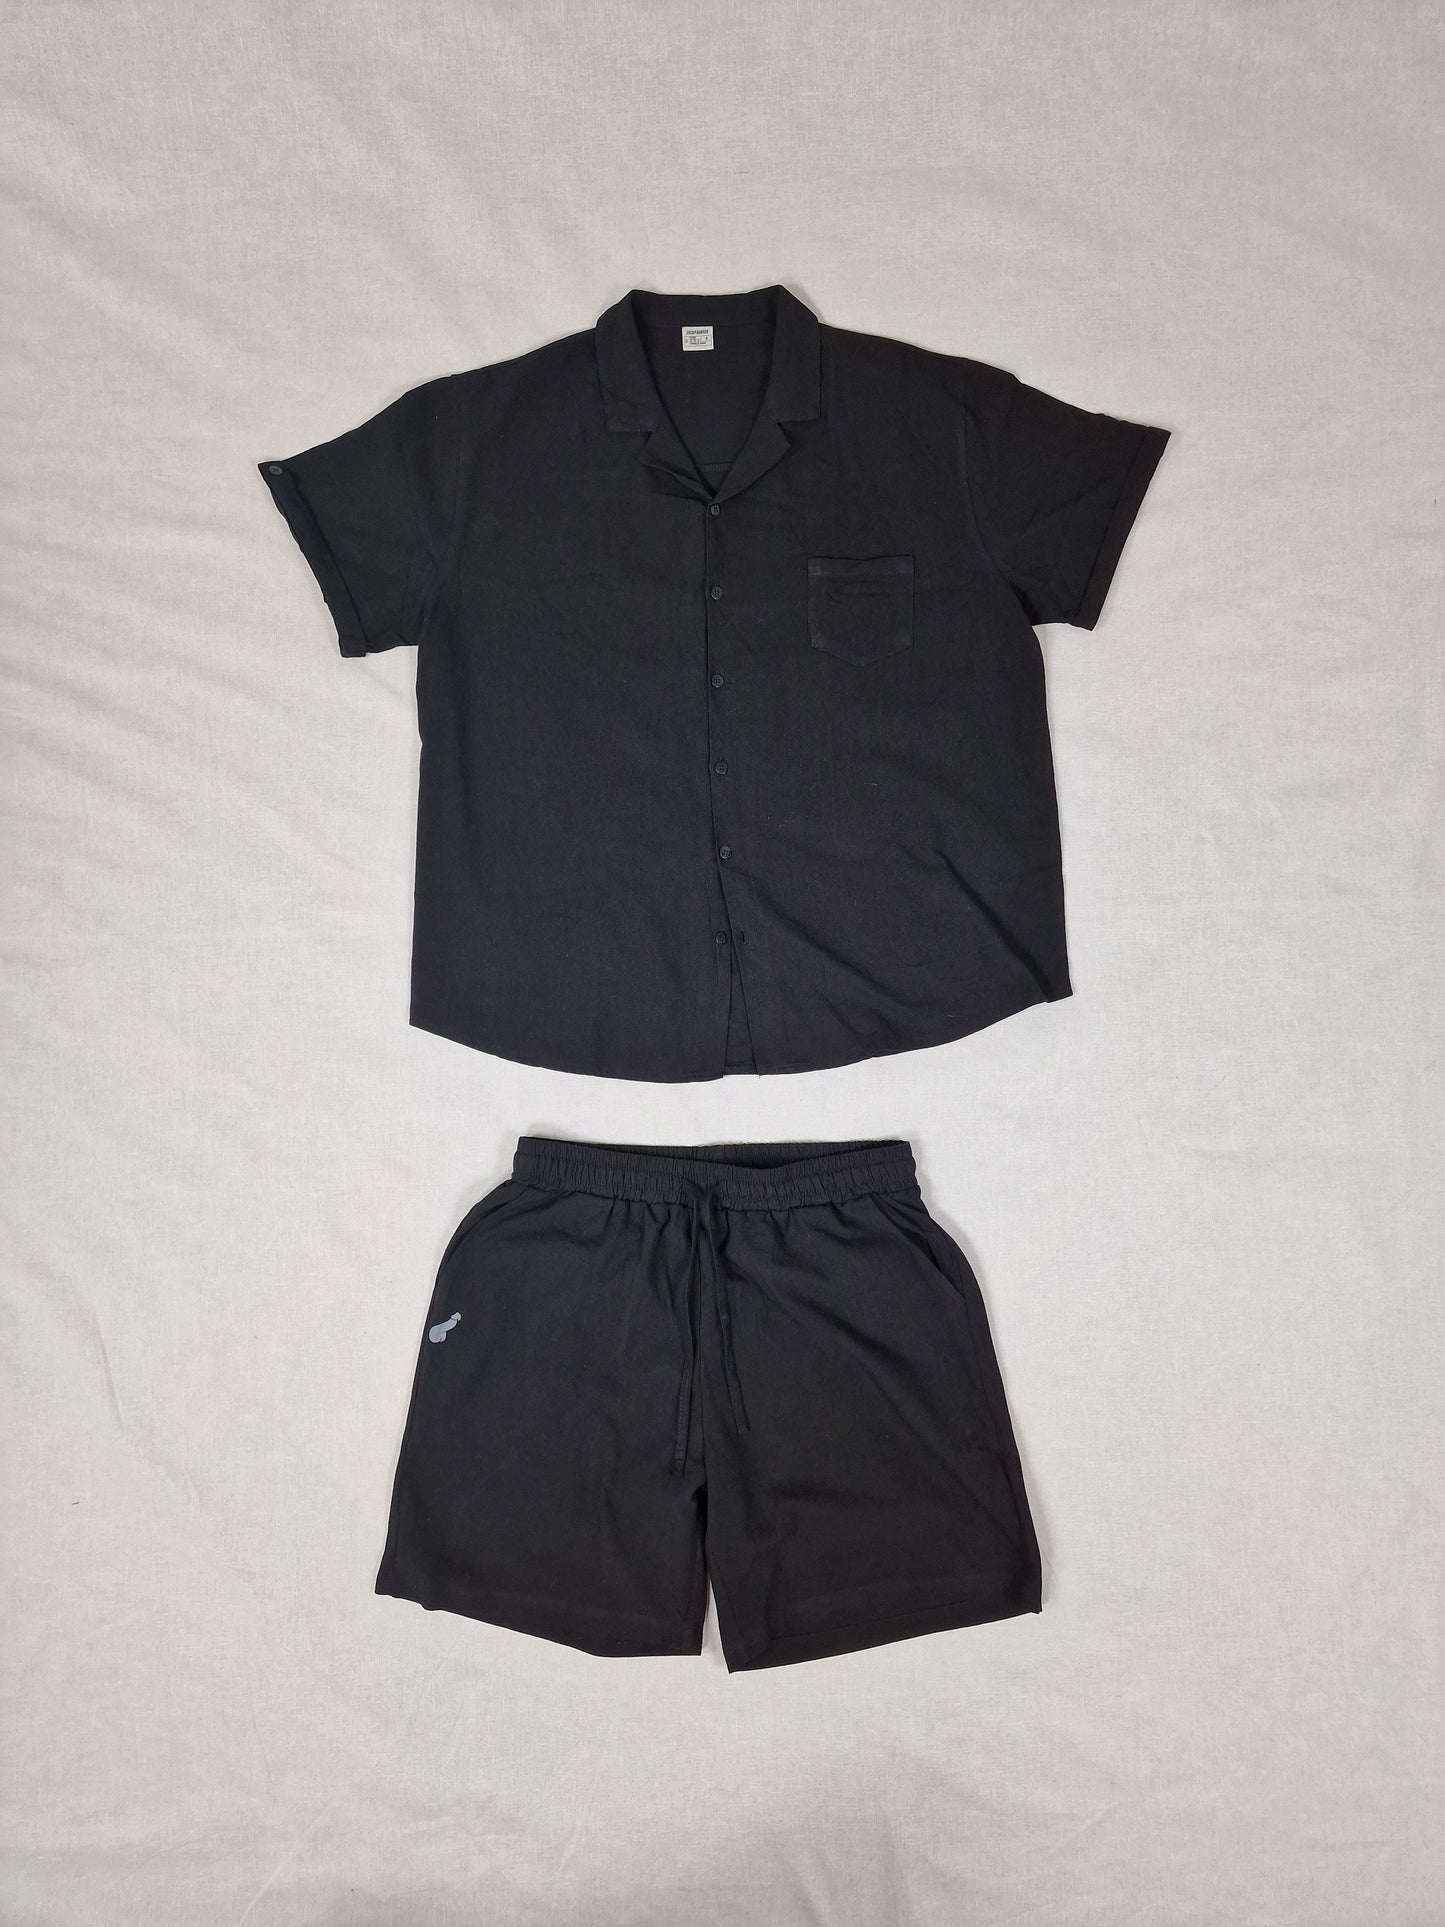 Linne och Bomulls set, shorts och skjorta i relaxed fit - svart med dick